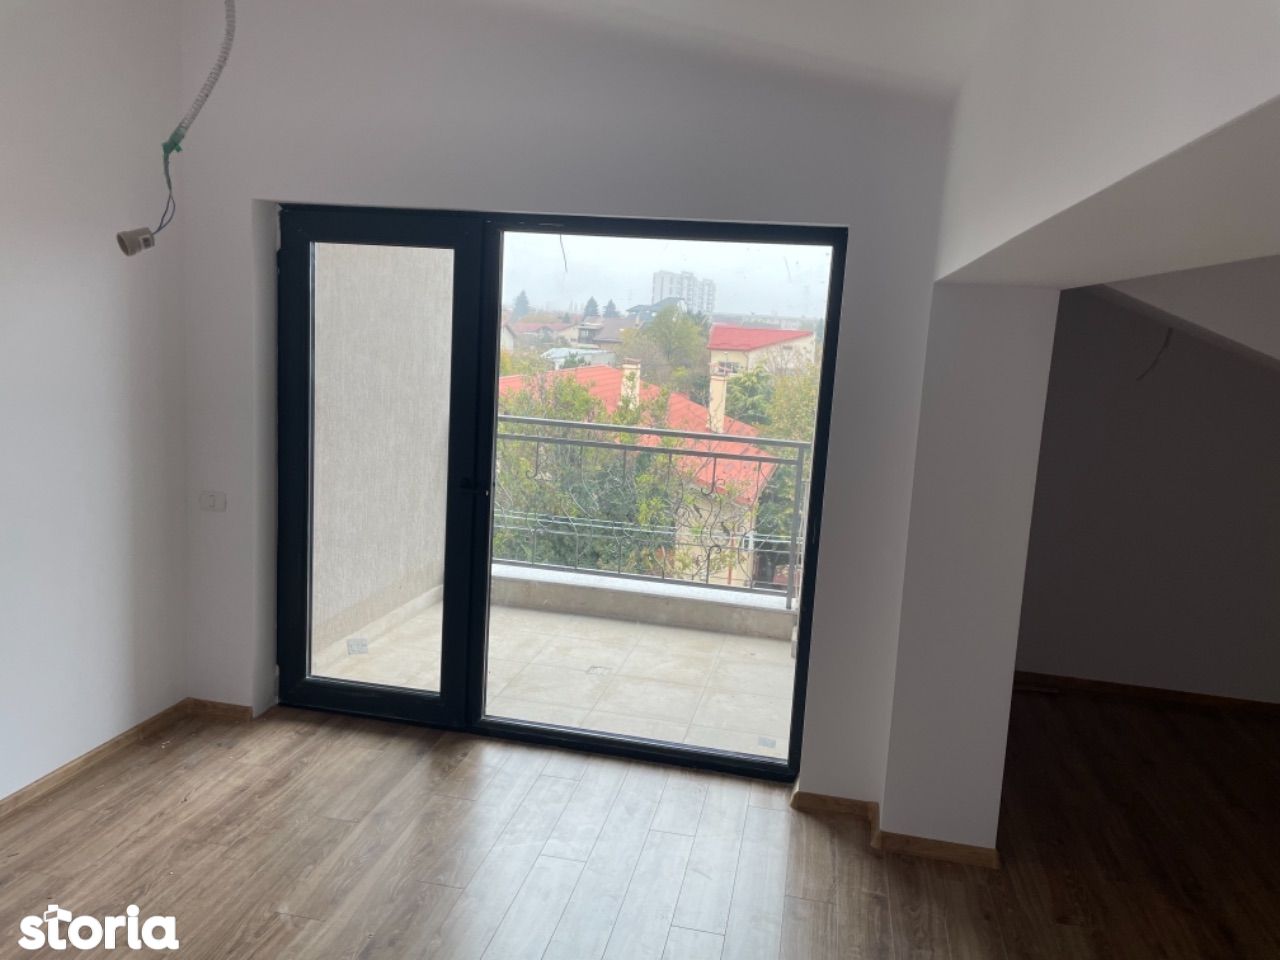 Apartament 2 camere /IMOBIL FINALIZAT 2021/5 min metrou Bazilescu